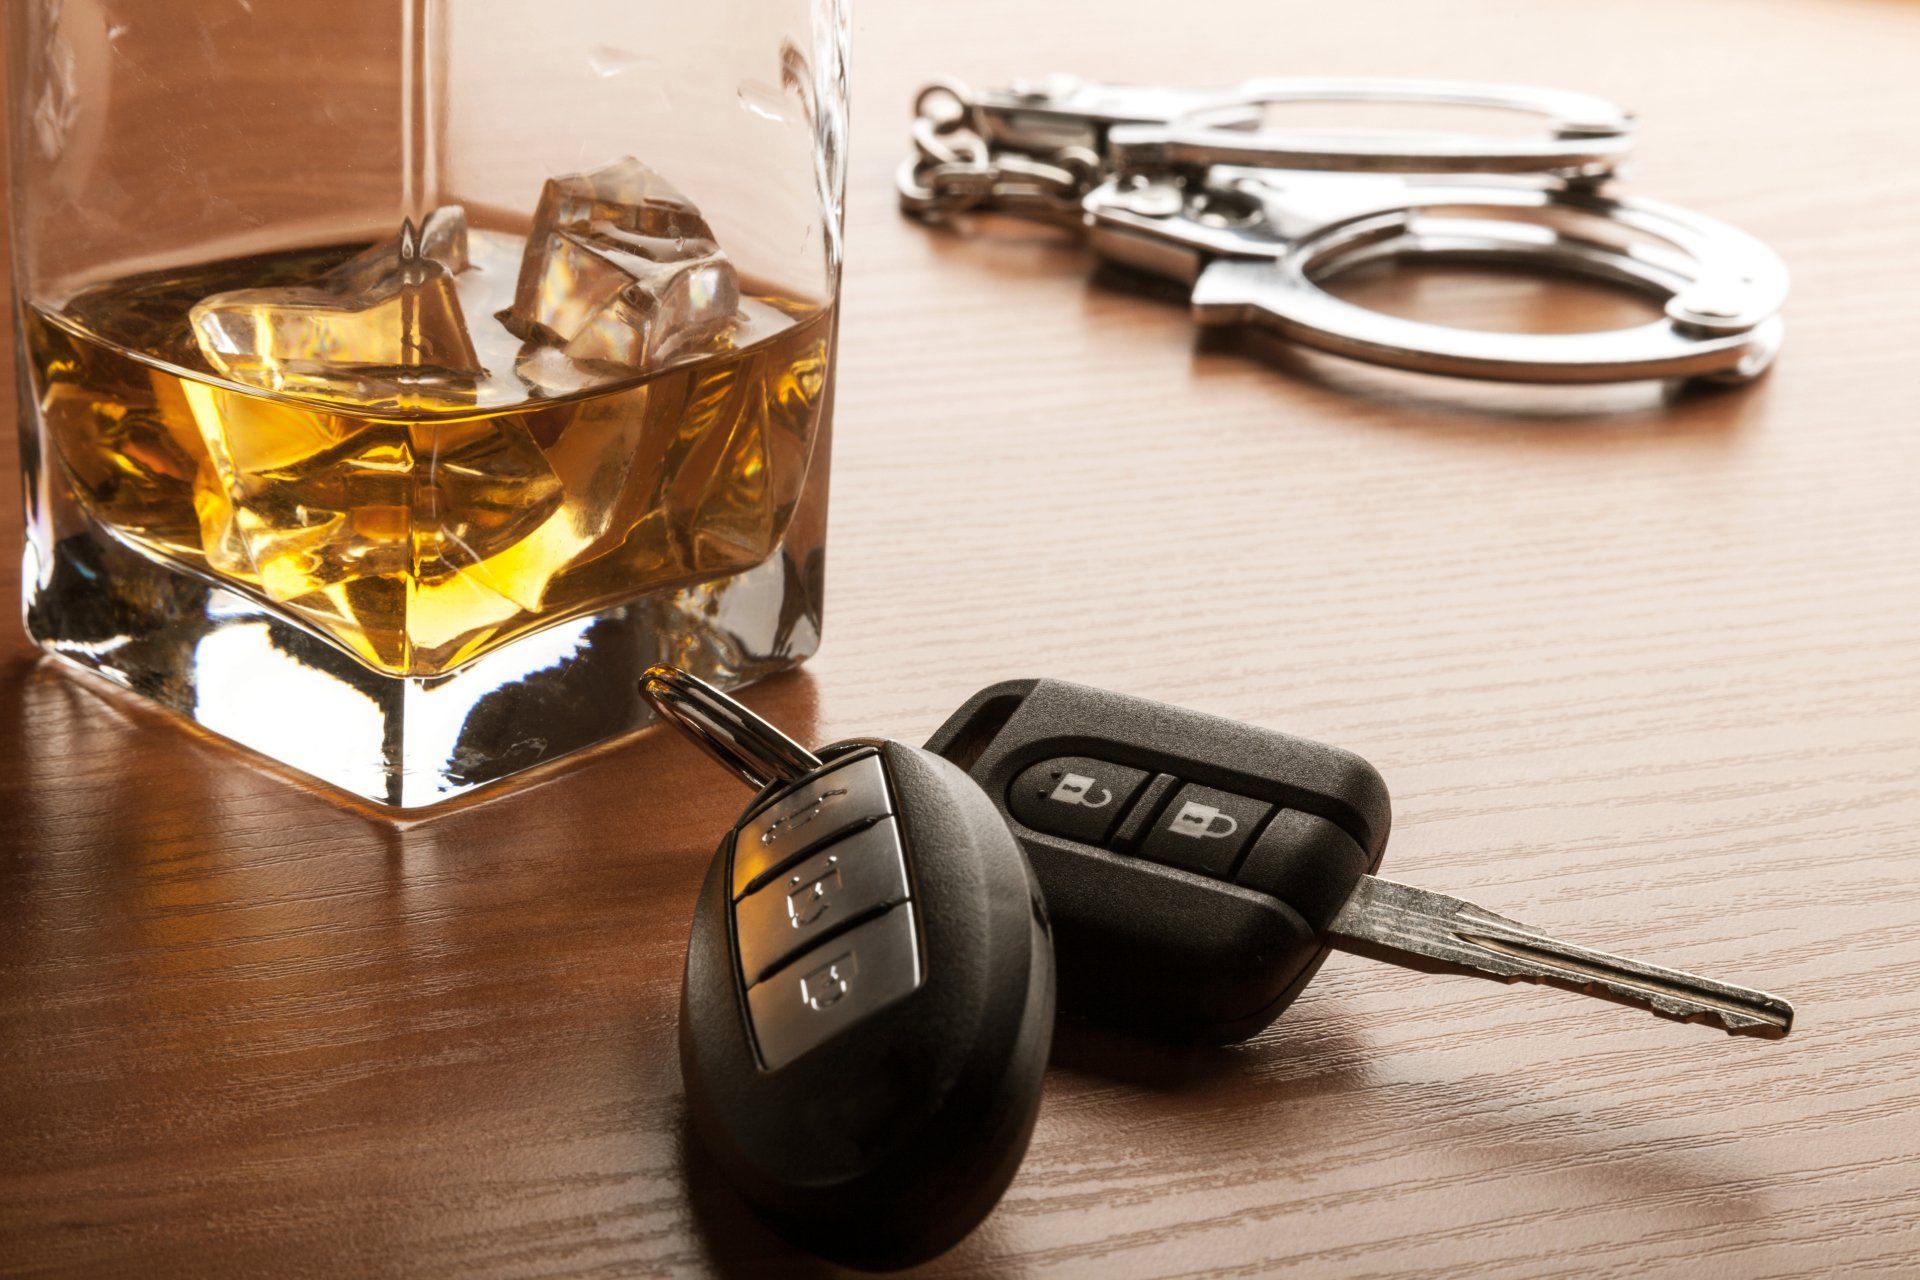 Trunkenheitsfahrt, Alkohl und Drogen im Straßenverkehr